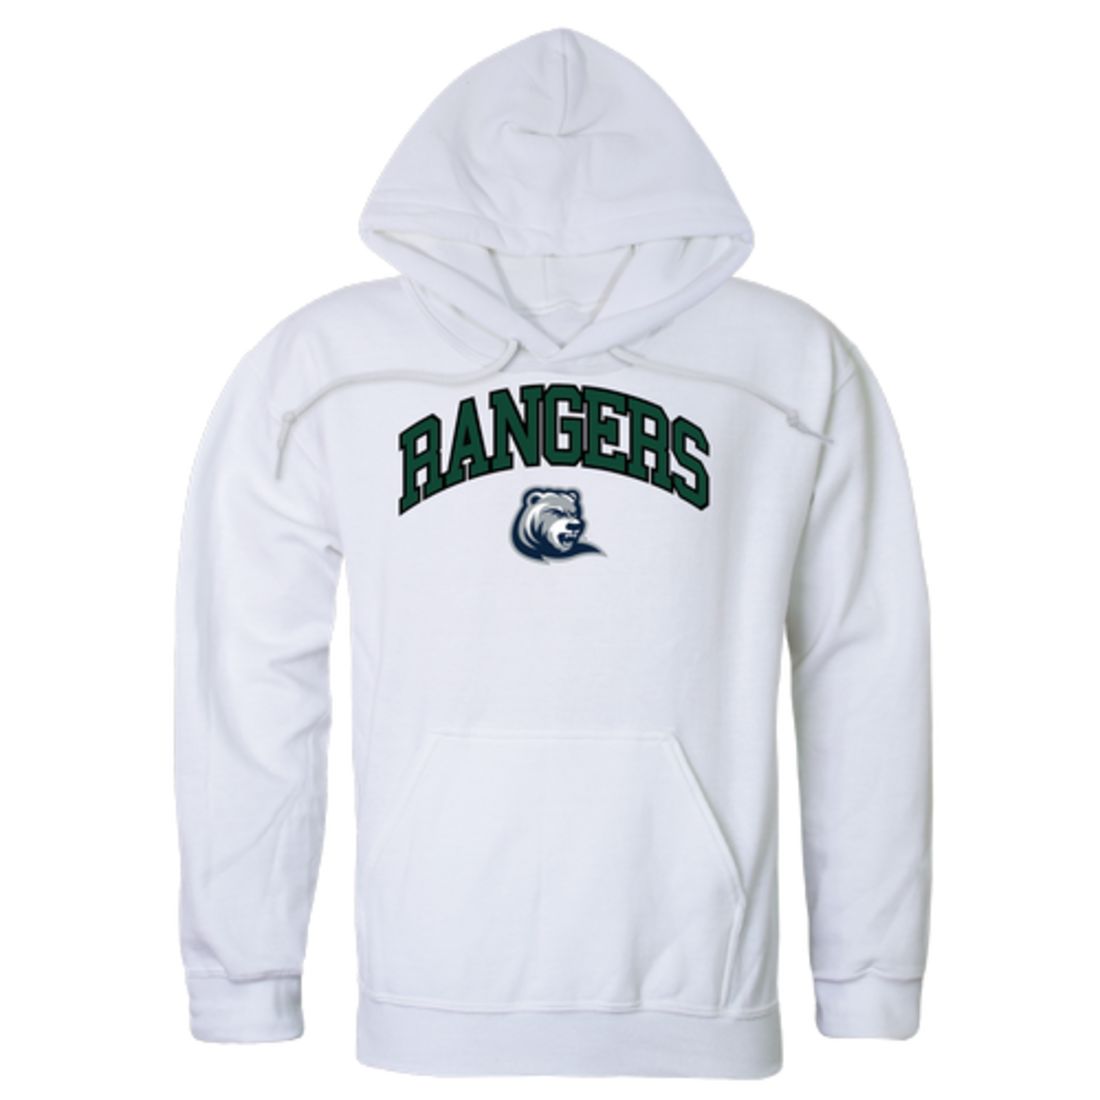 Drew-University-Rangers-Campus-Fleece-Hoodie-Sweatshirts